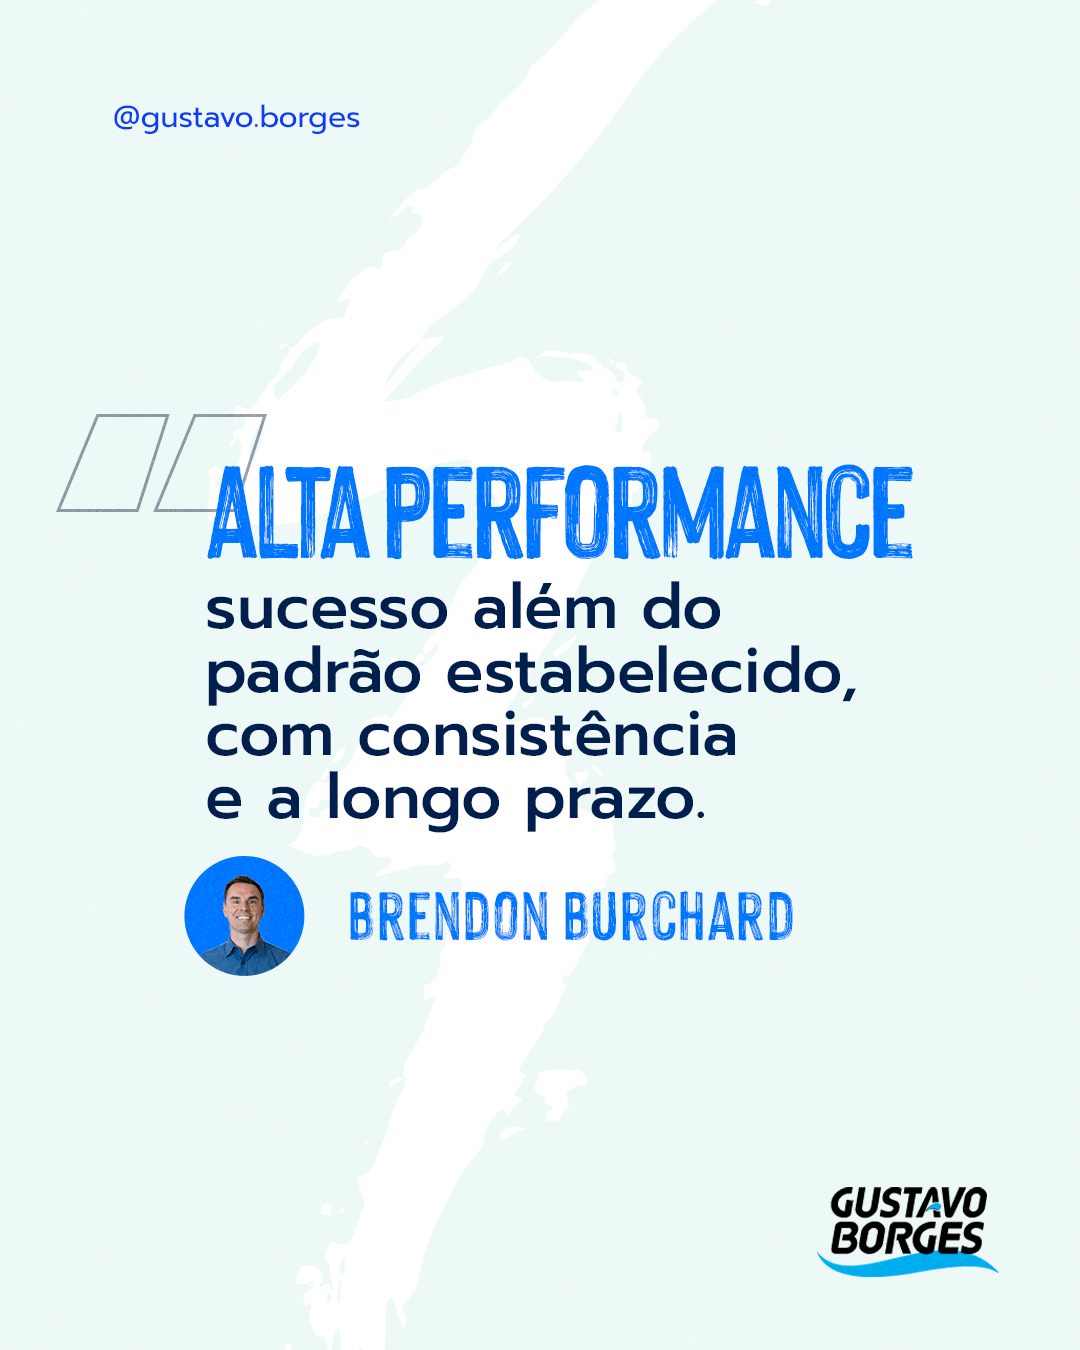 Frase de Brendon Burchard: "Alta performance é o sucesso além do padrão estabelecido, consistência e a longo prazo."